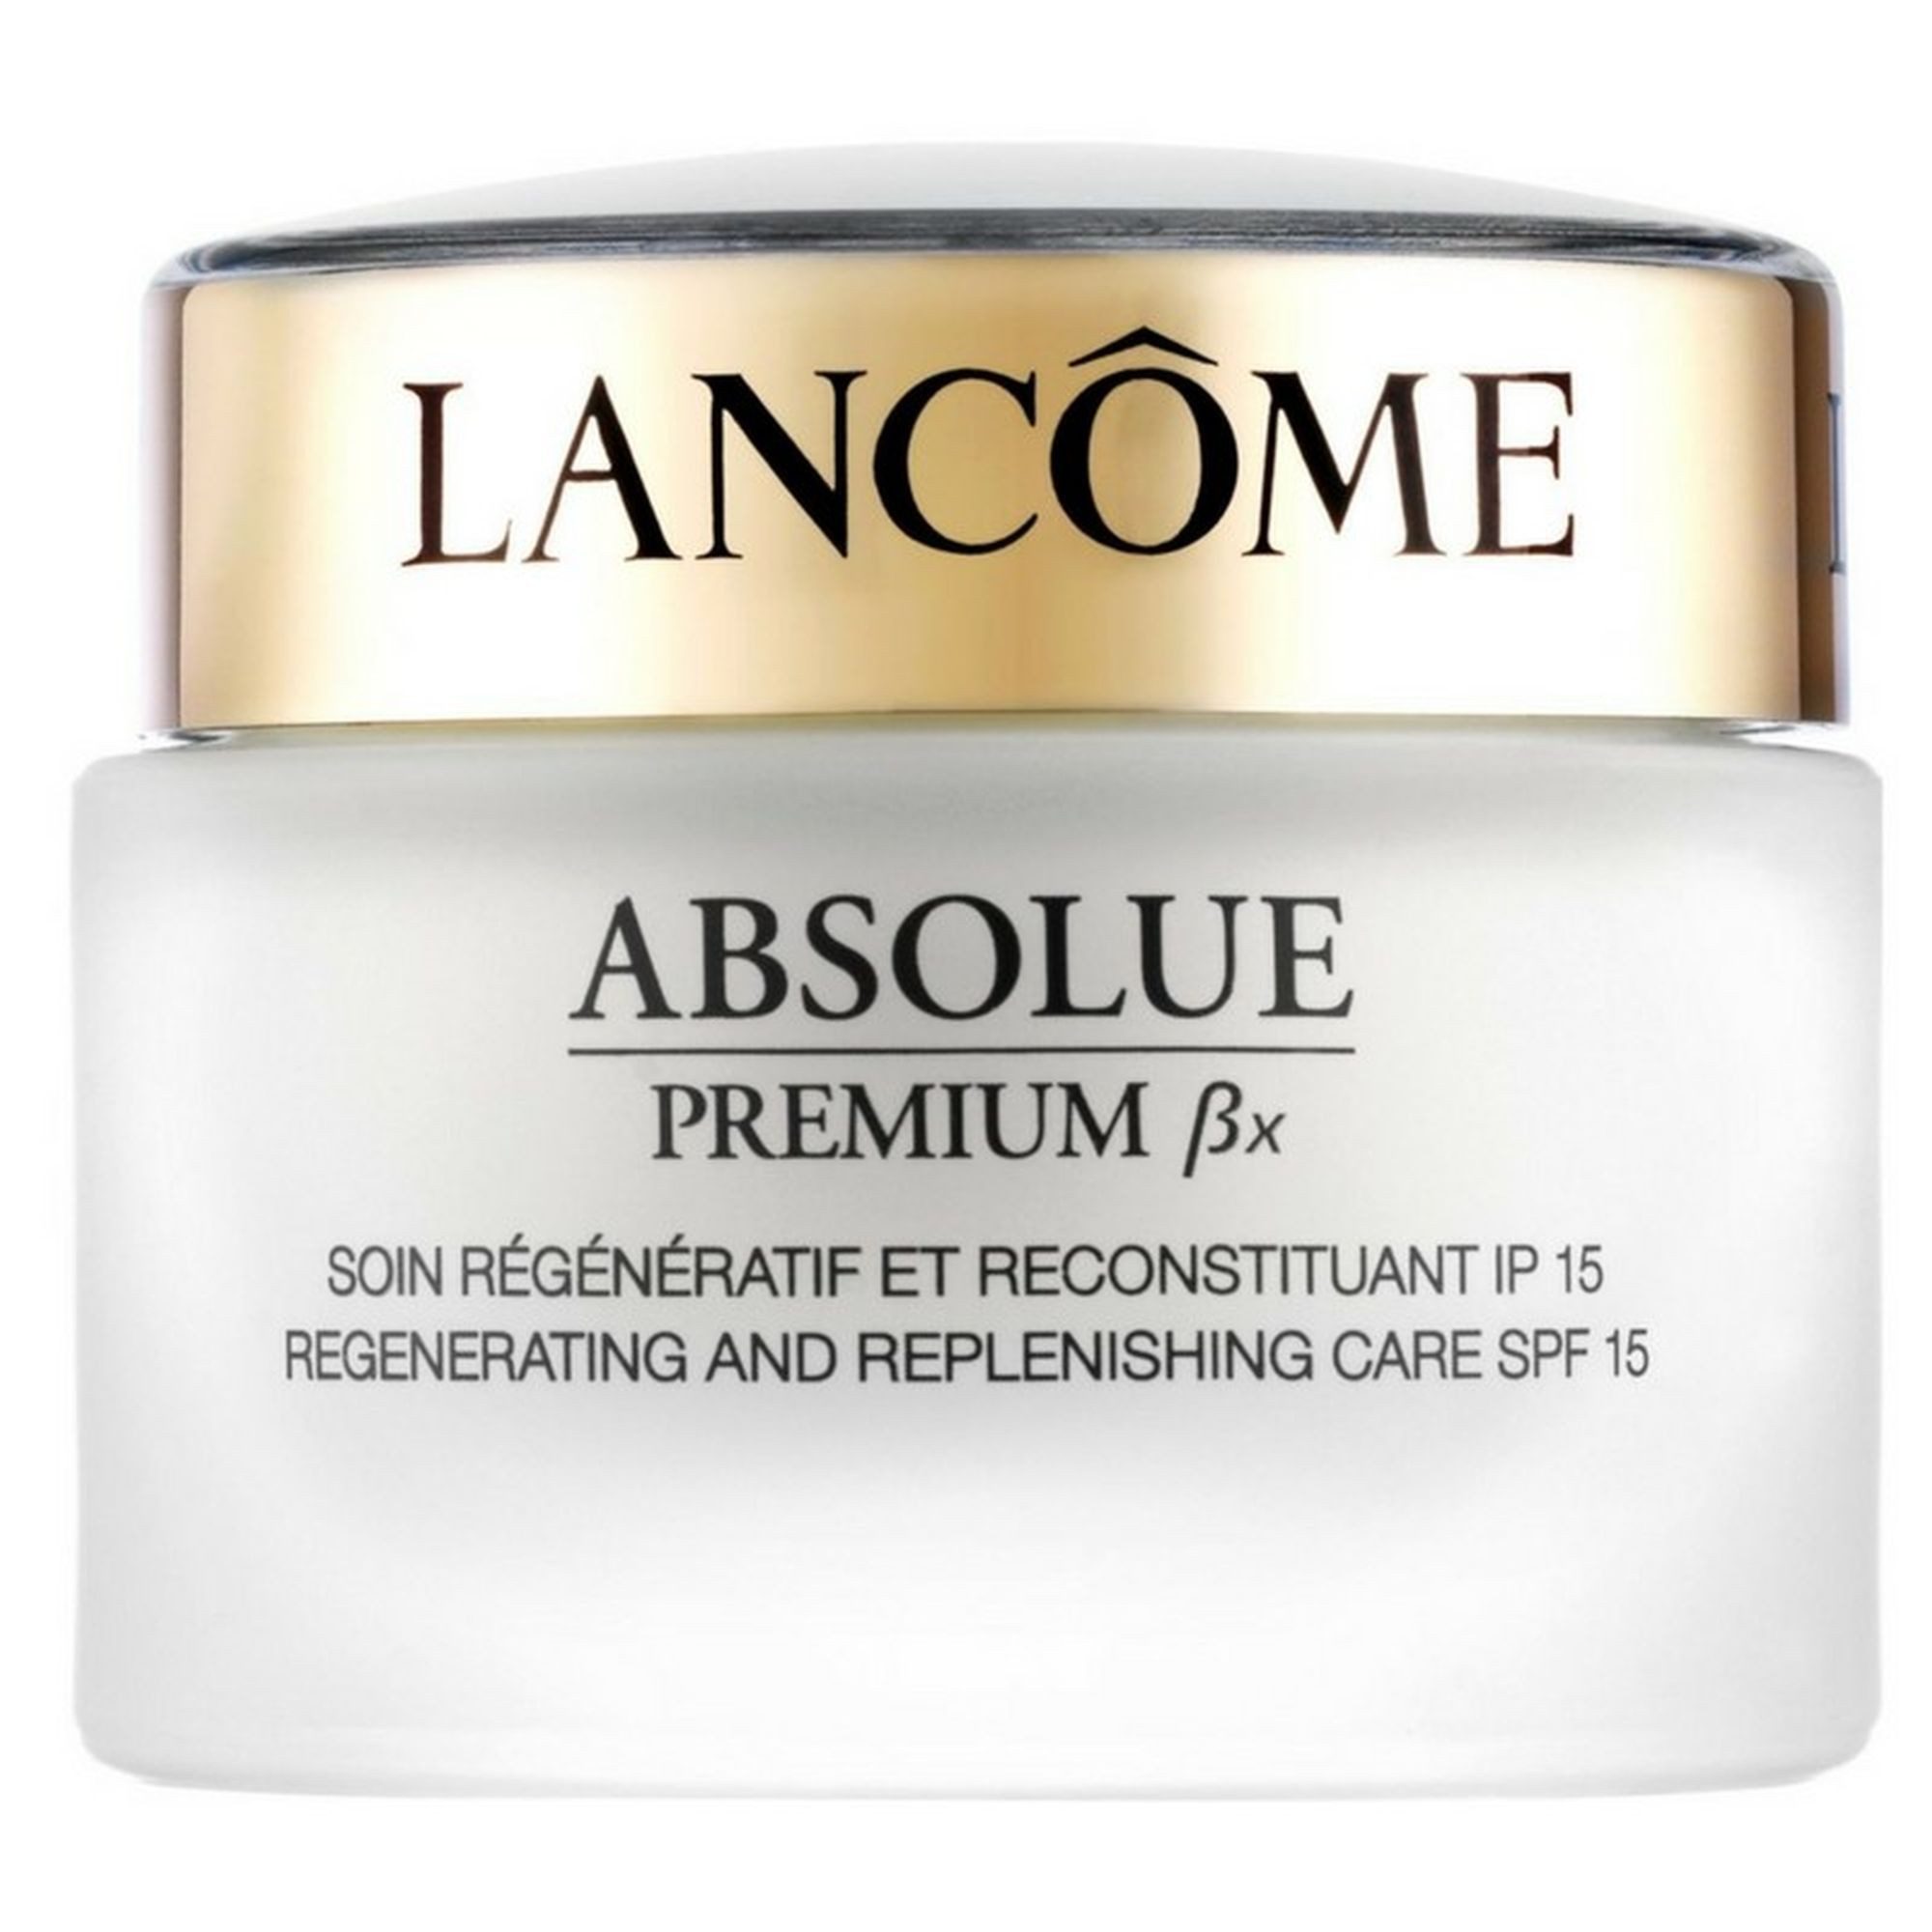 LANCOME Anti-Aging-Creme Absolue Premium ßx Gesichtscreme